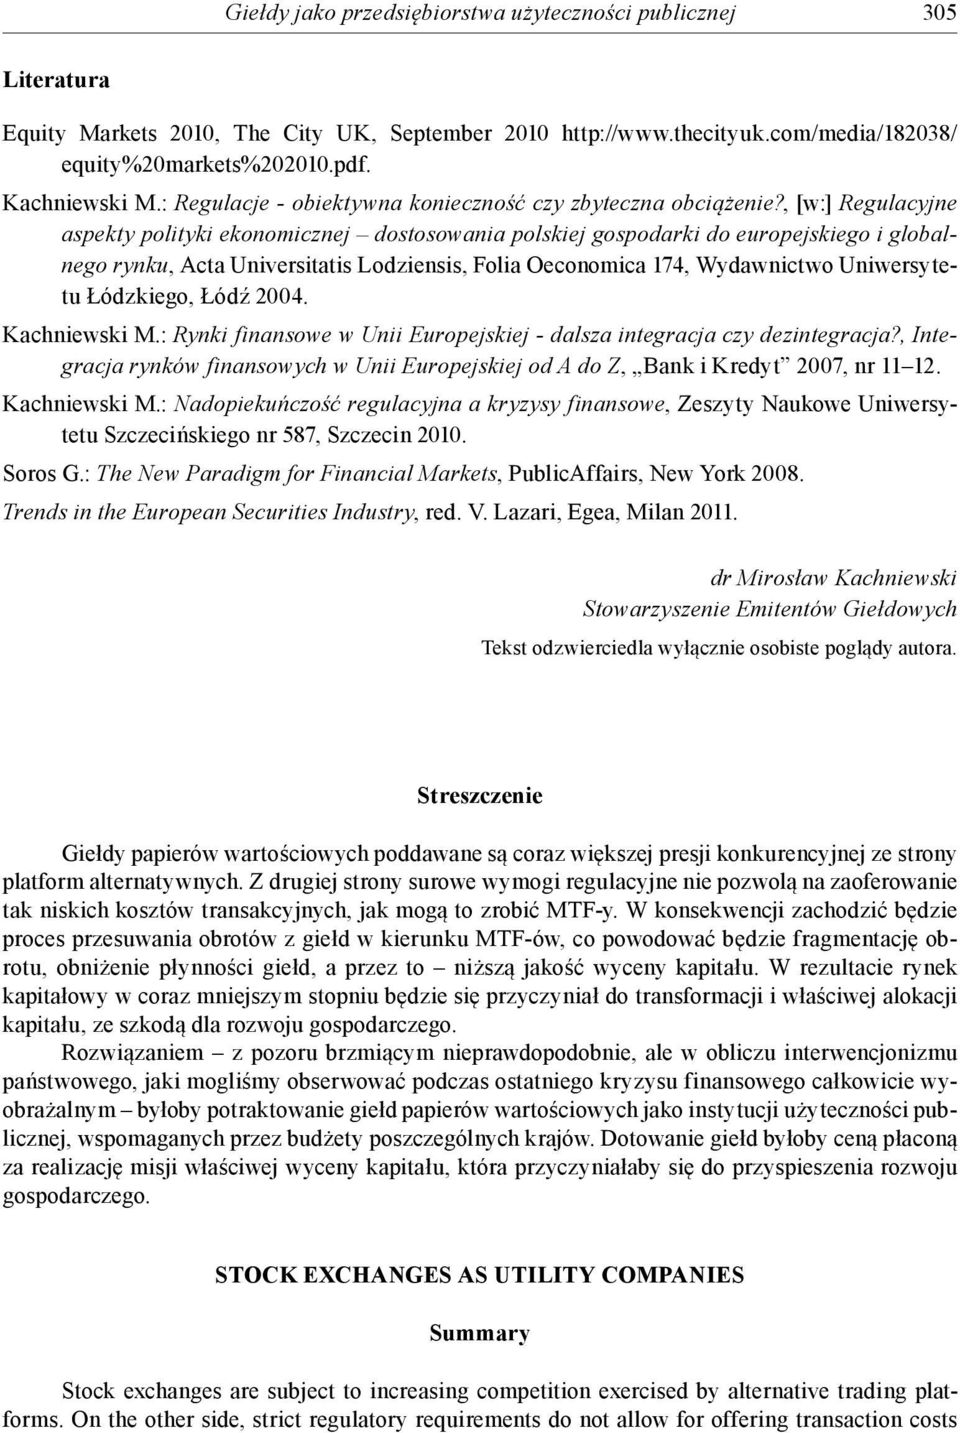 , [w:] Regulacyjne aspekty polityki ekonomicznej dostosowania polskiej gospodarki do europejskiego i globalnego rynku, Acta Universitatis Lodziensis, Folia Oeconomica 174, Wydawnictwo Uniwersytetu